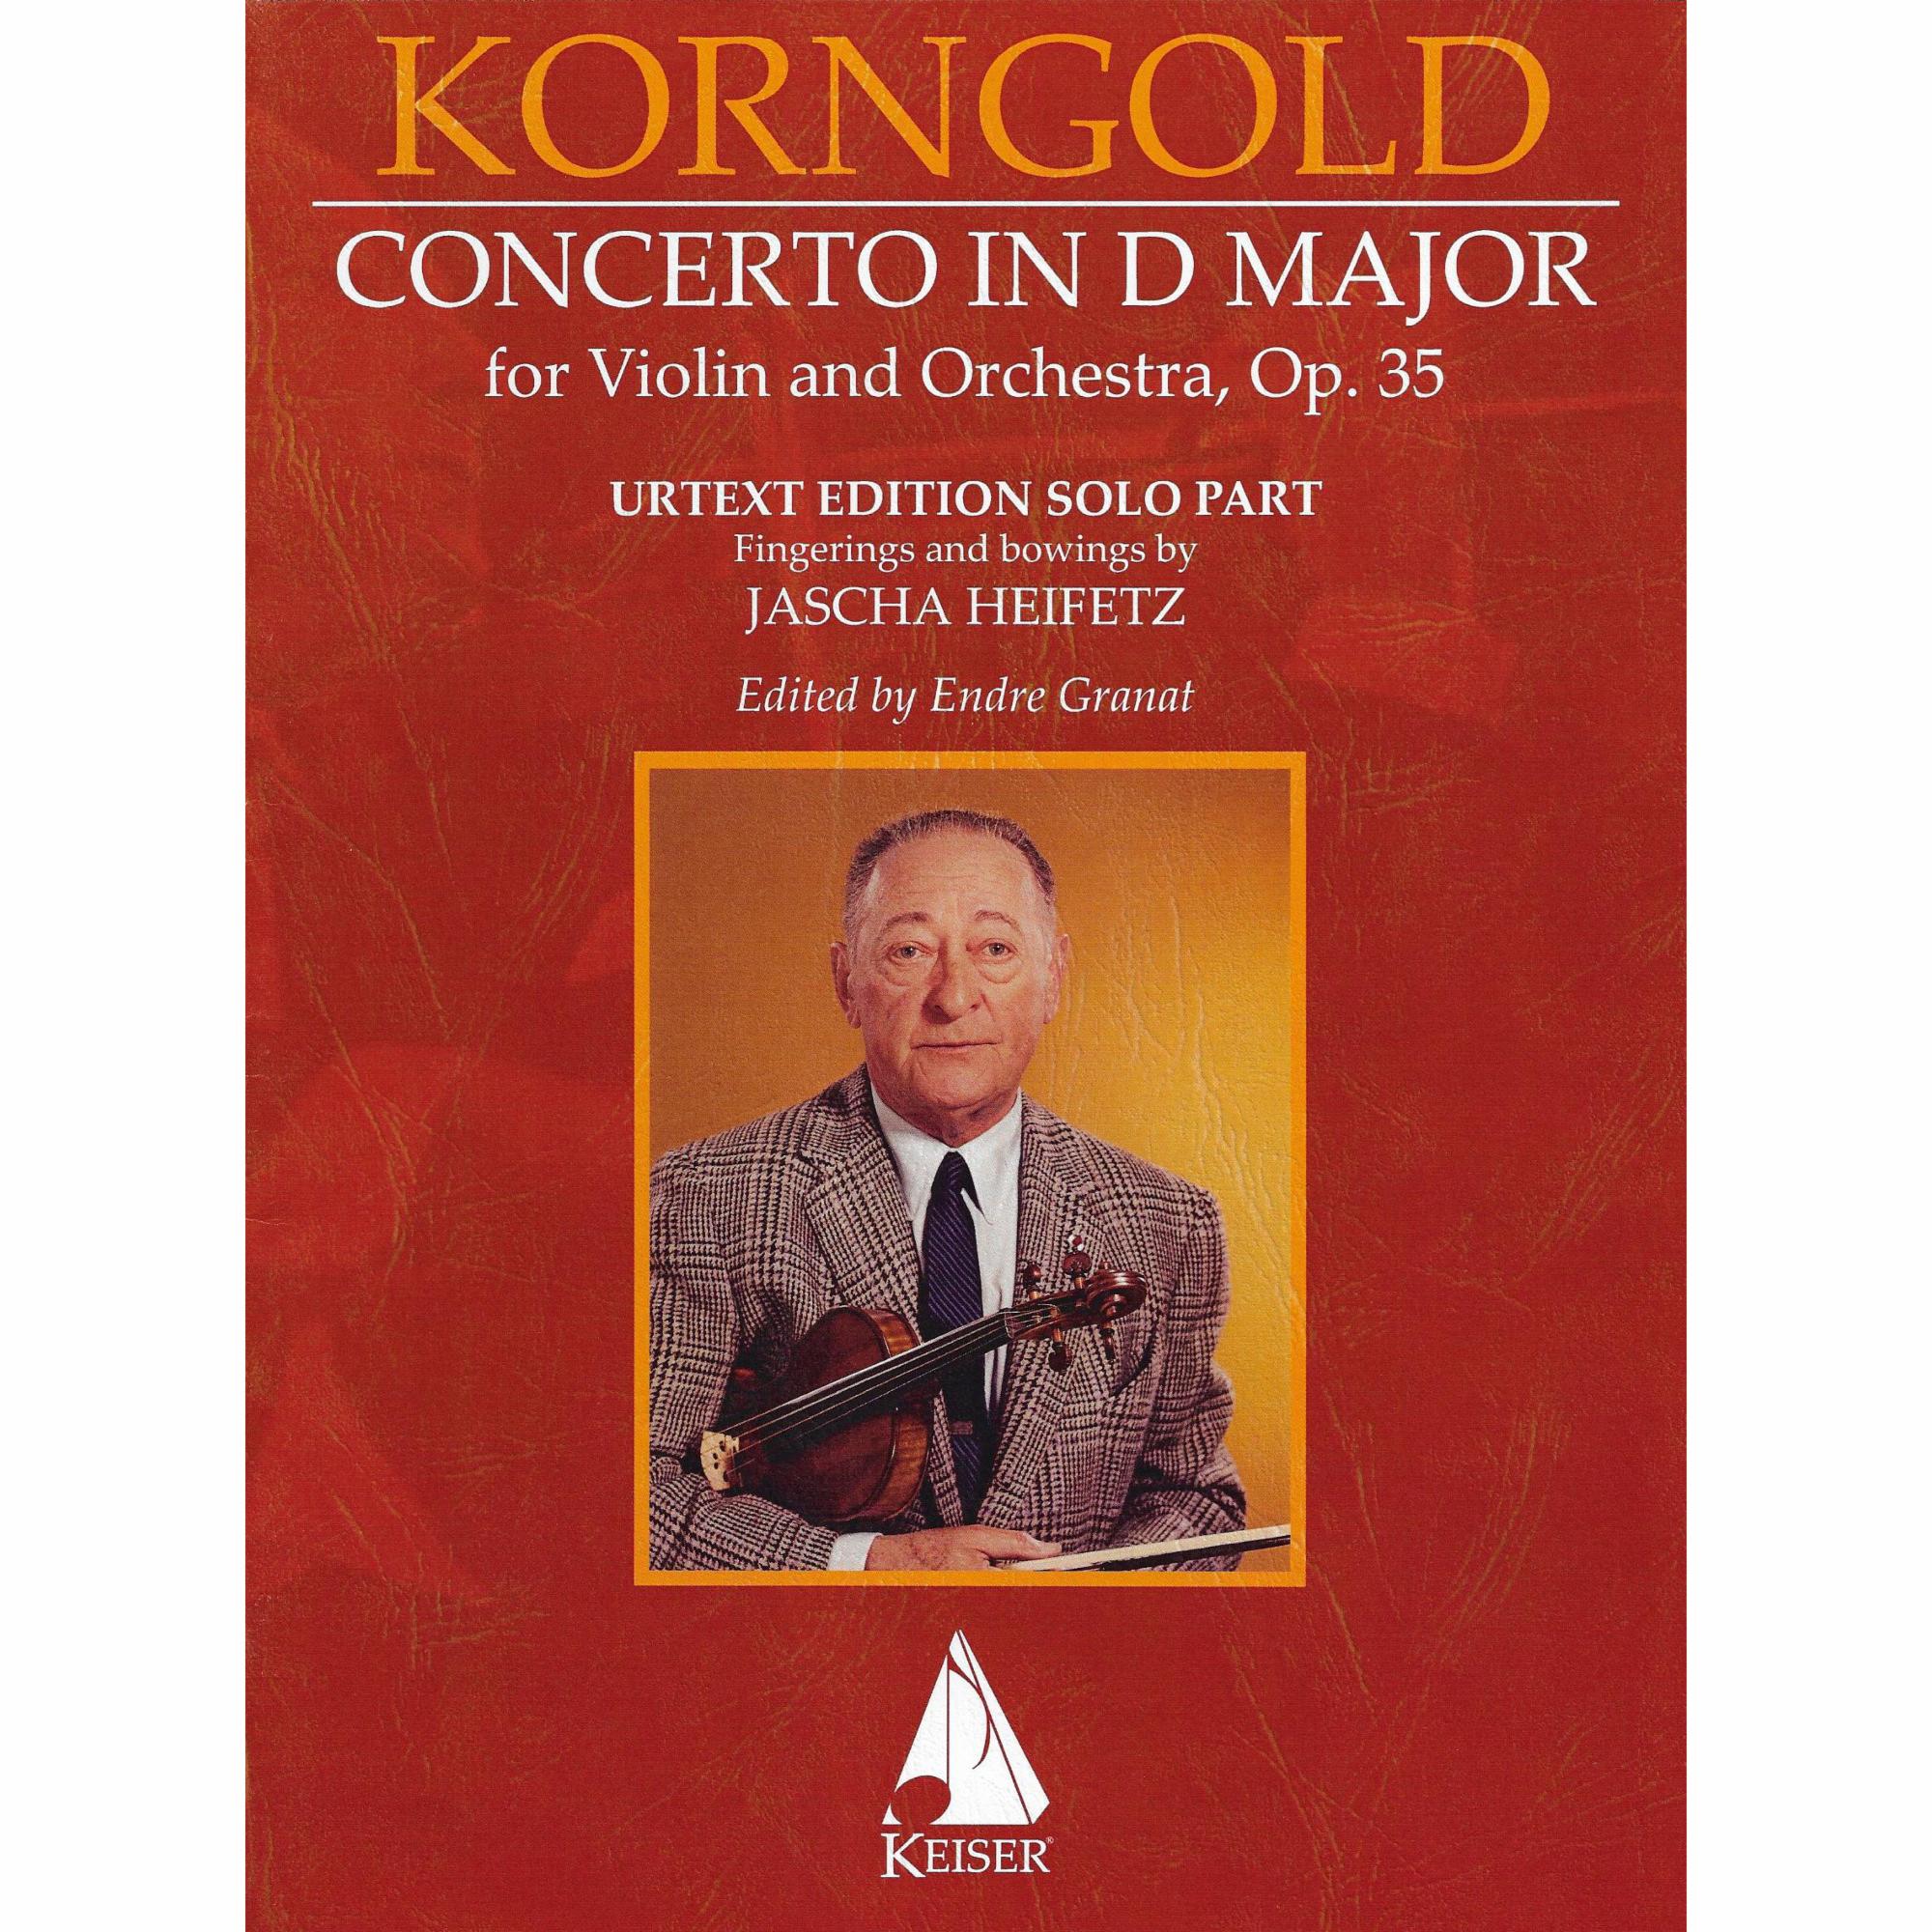 Korngold -- Concerto in D Major, Op. 35 for Violin